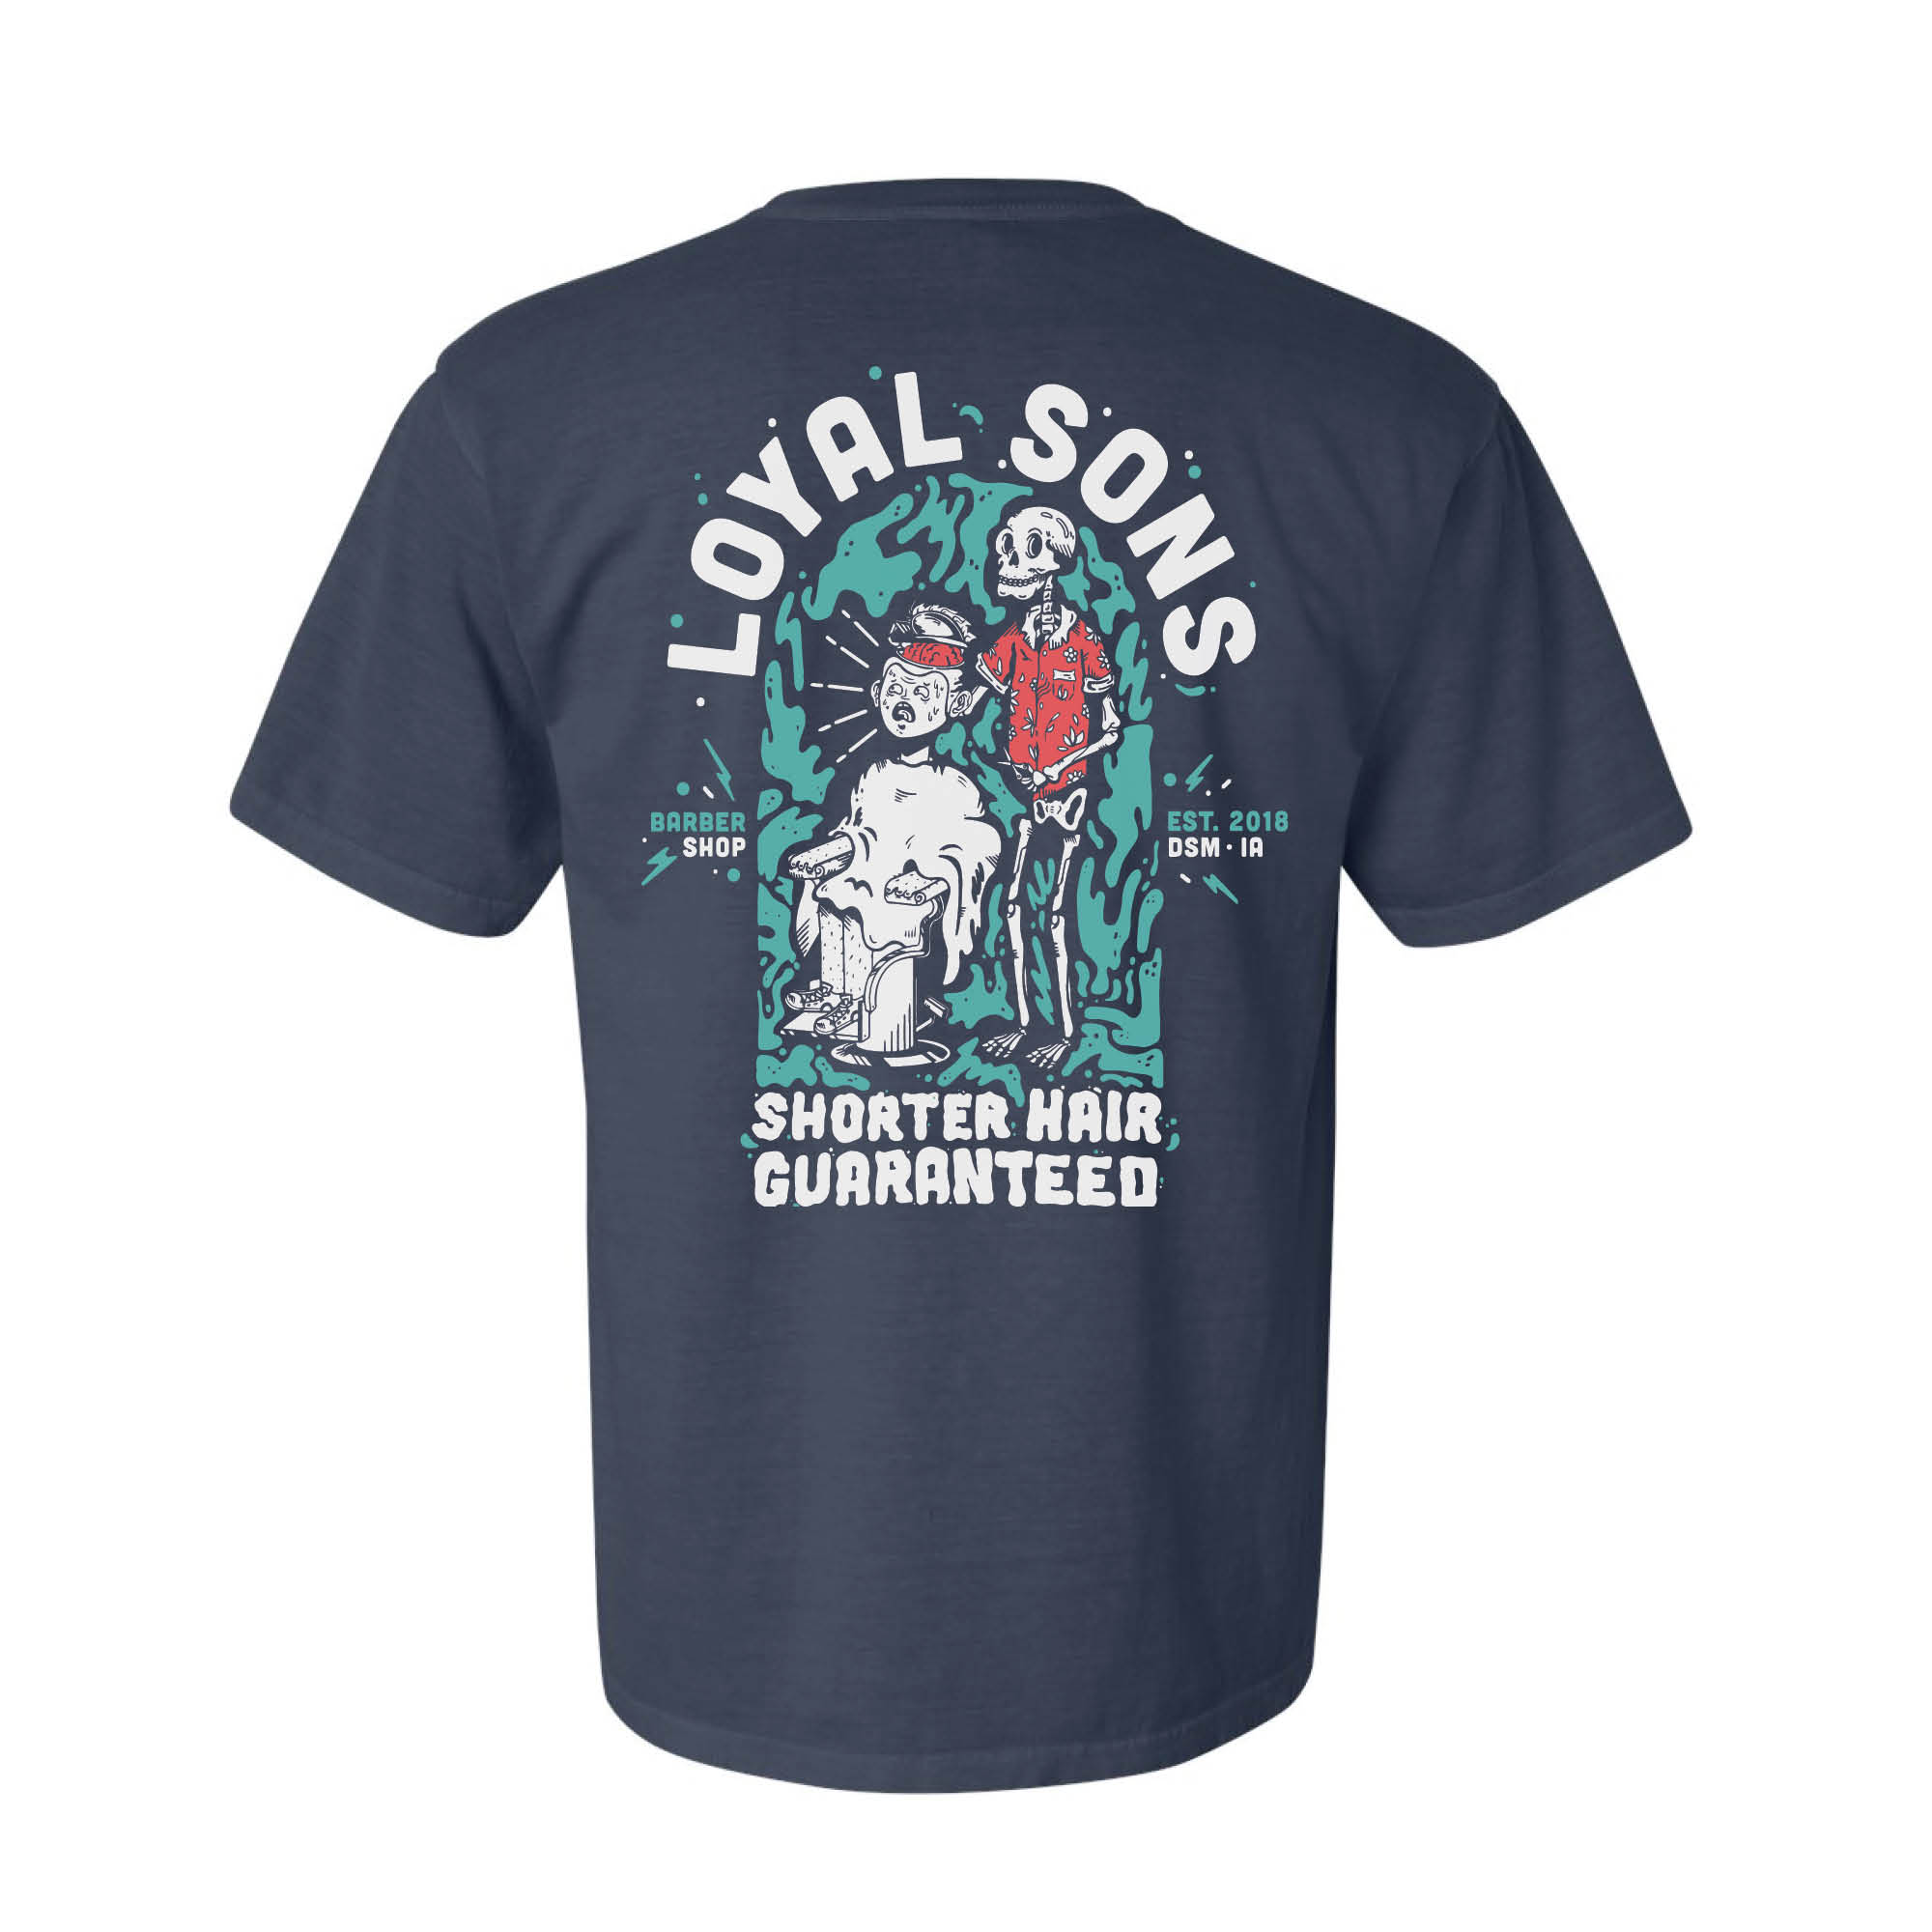 Shorter Hair Guaranteed Loyal Sons Barber Shop Shirt